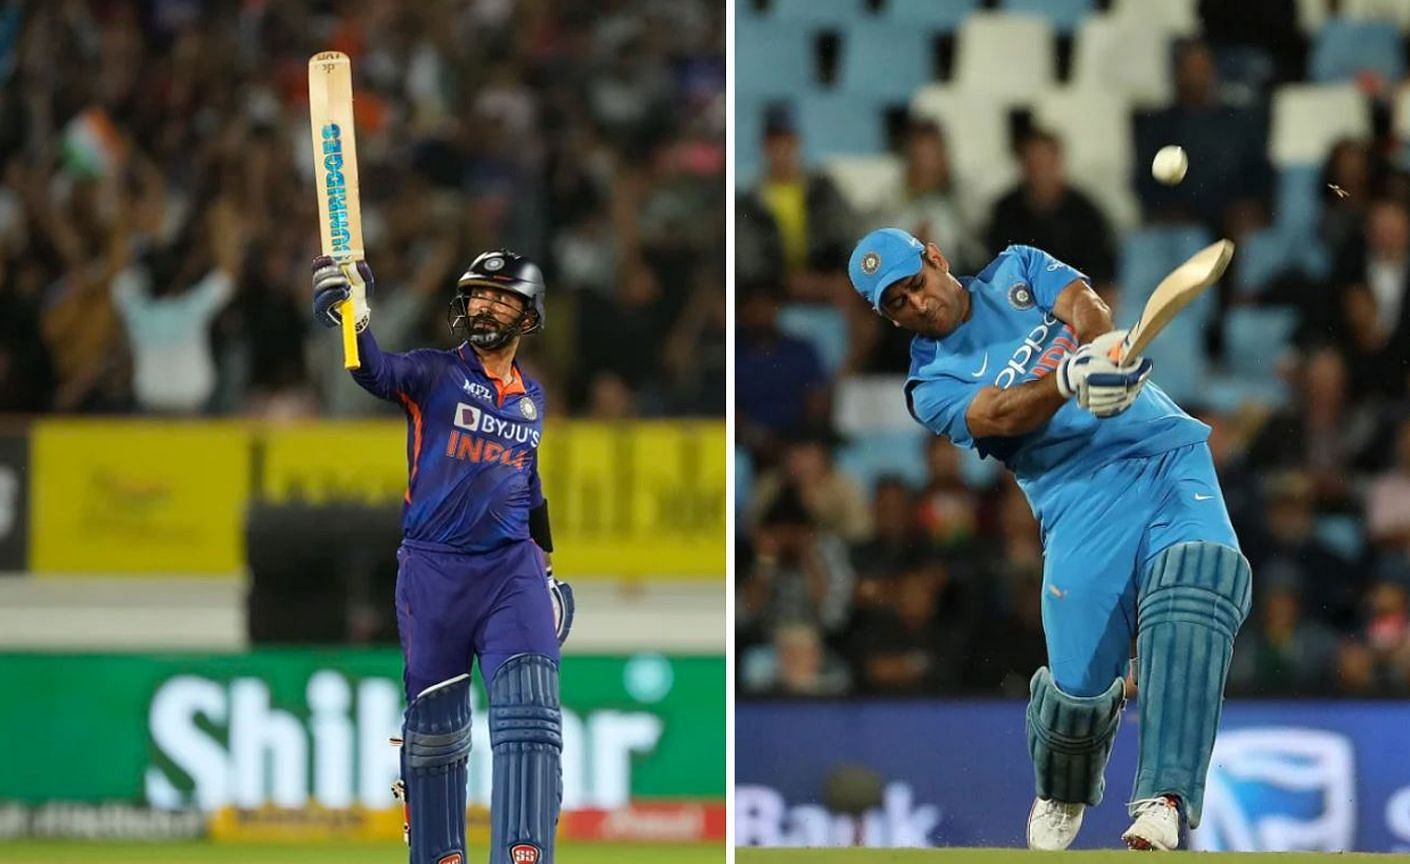 3 उम्रदराज भारतीय खिलाड़ी जिन्होंने टी20 में अर्धशतक लगाया है